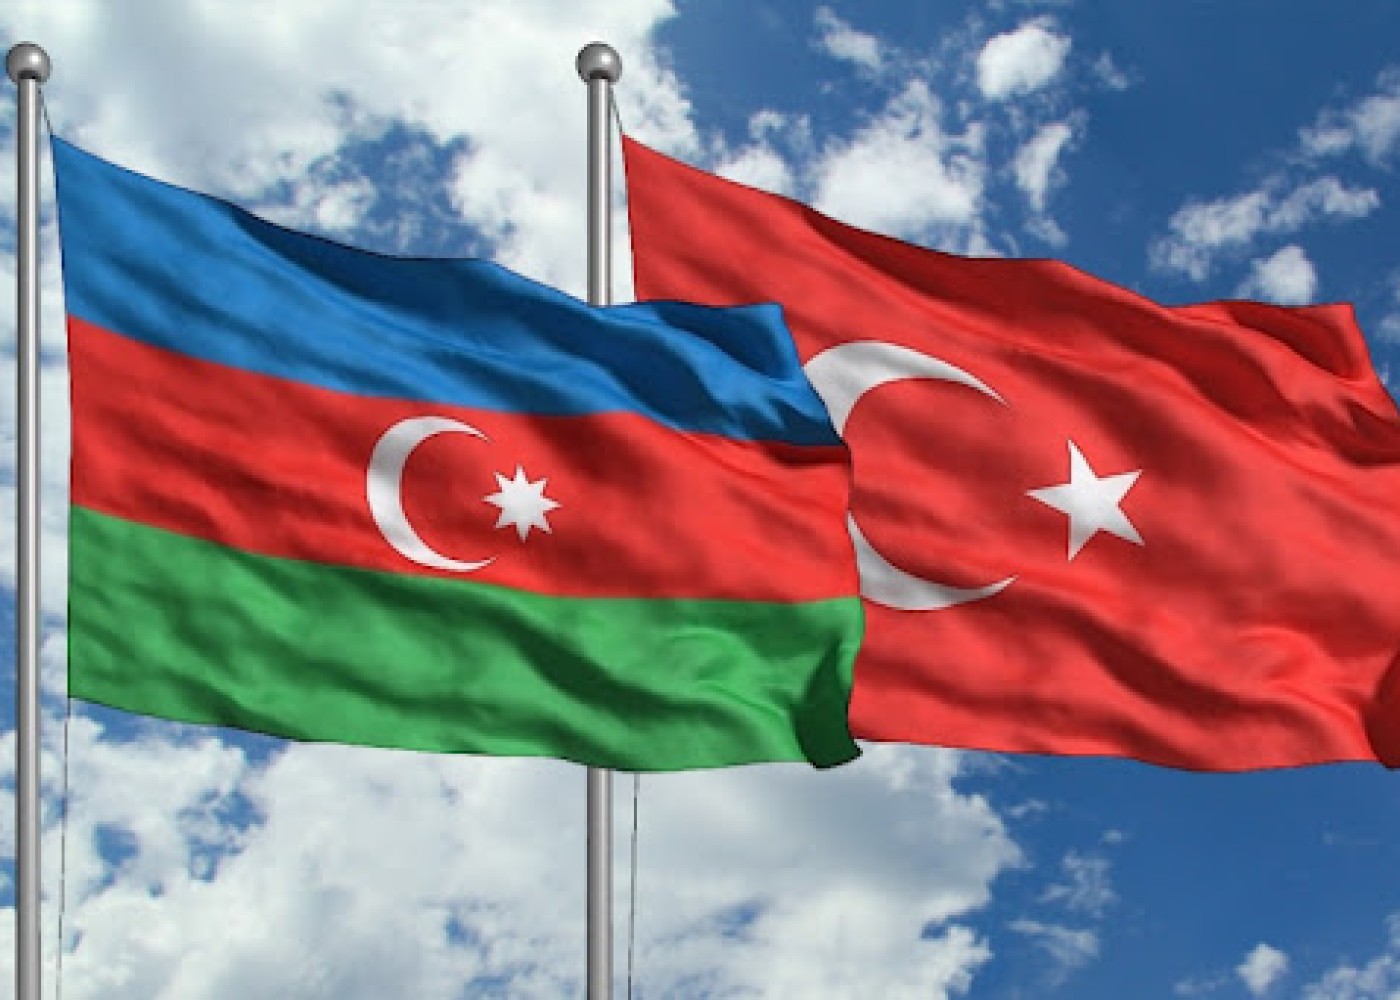 Azərbaycanla Türkiyə arasında ikiqat vergitutma aradan qaldırılır